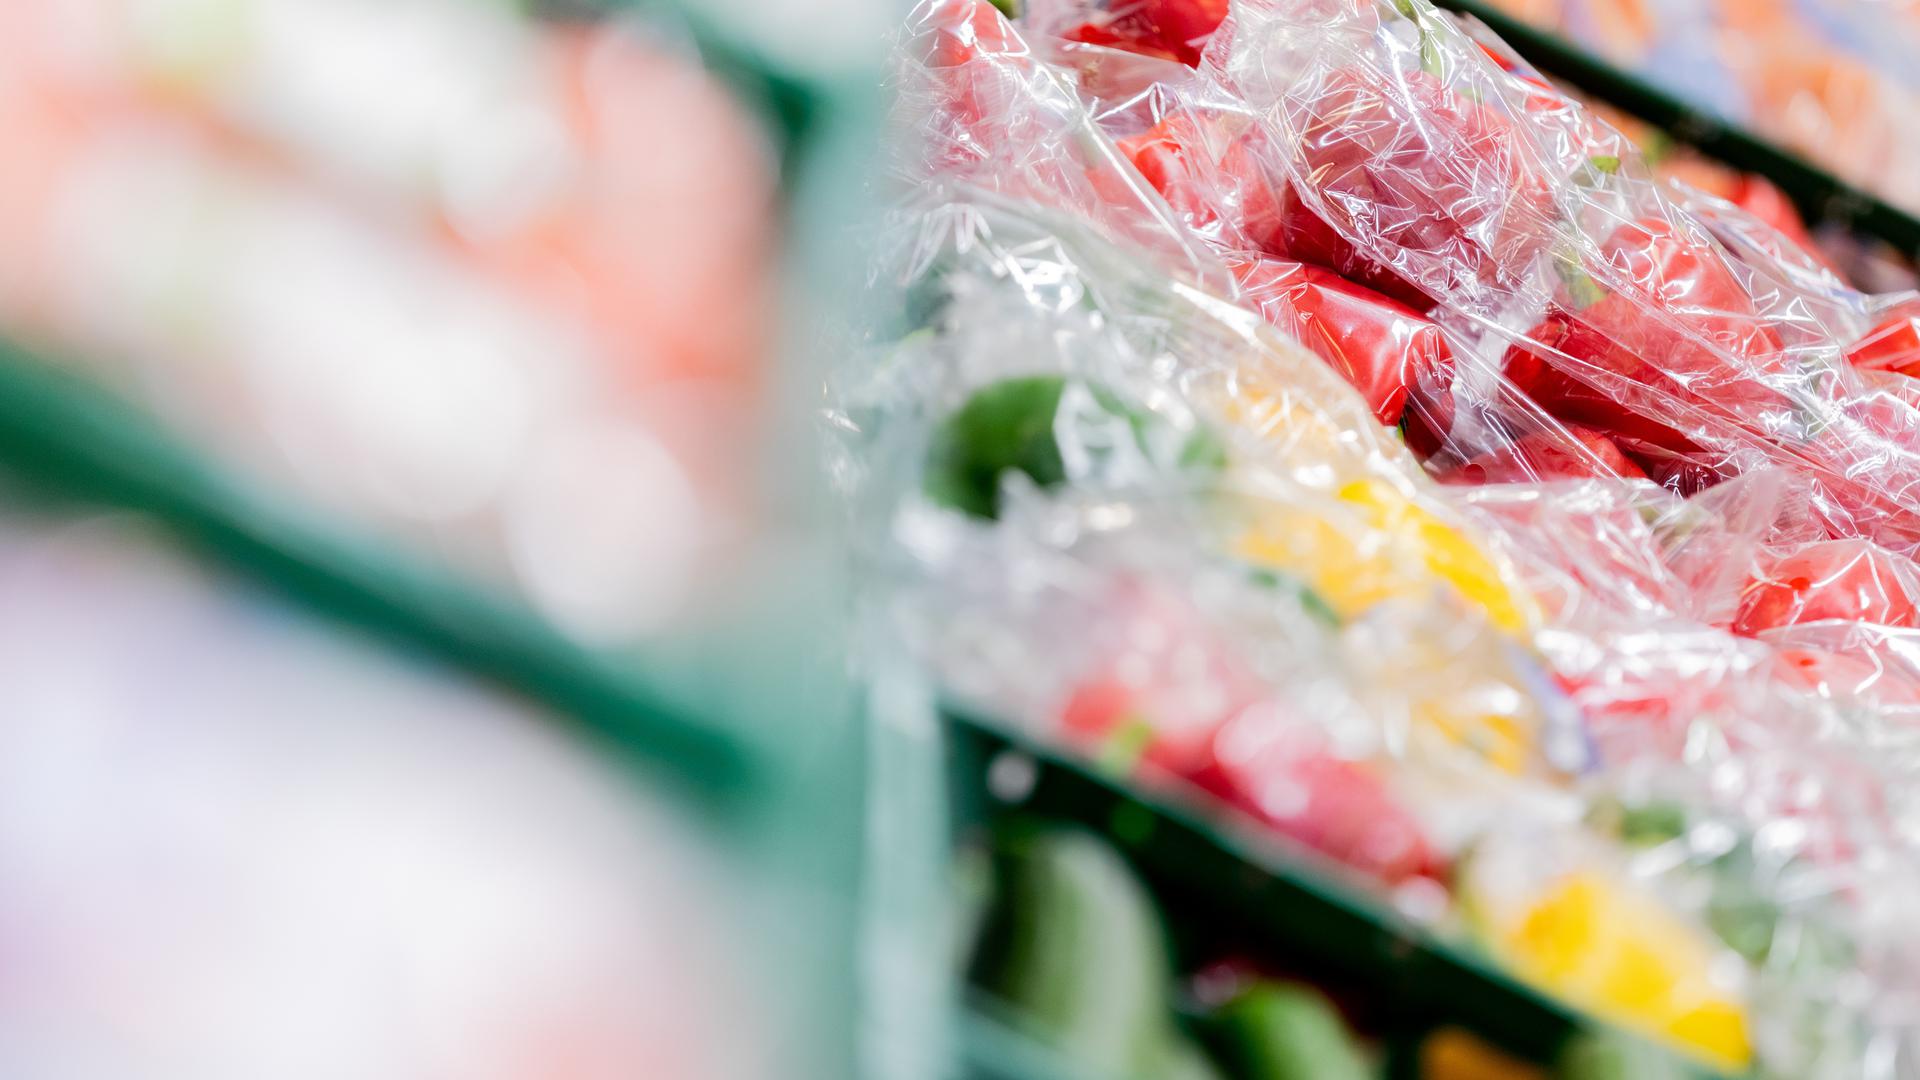 Gemüse in Plastikverpackung liegen in einem Supermarkt. 